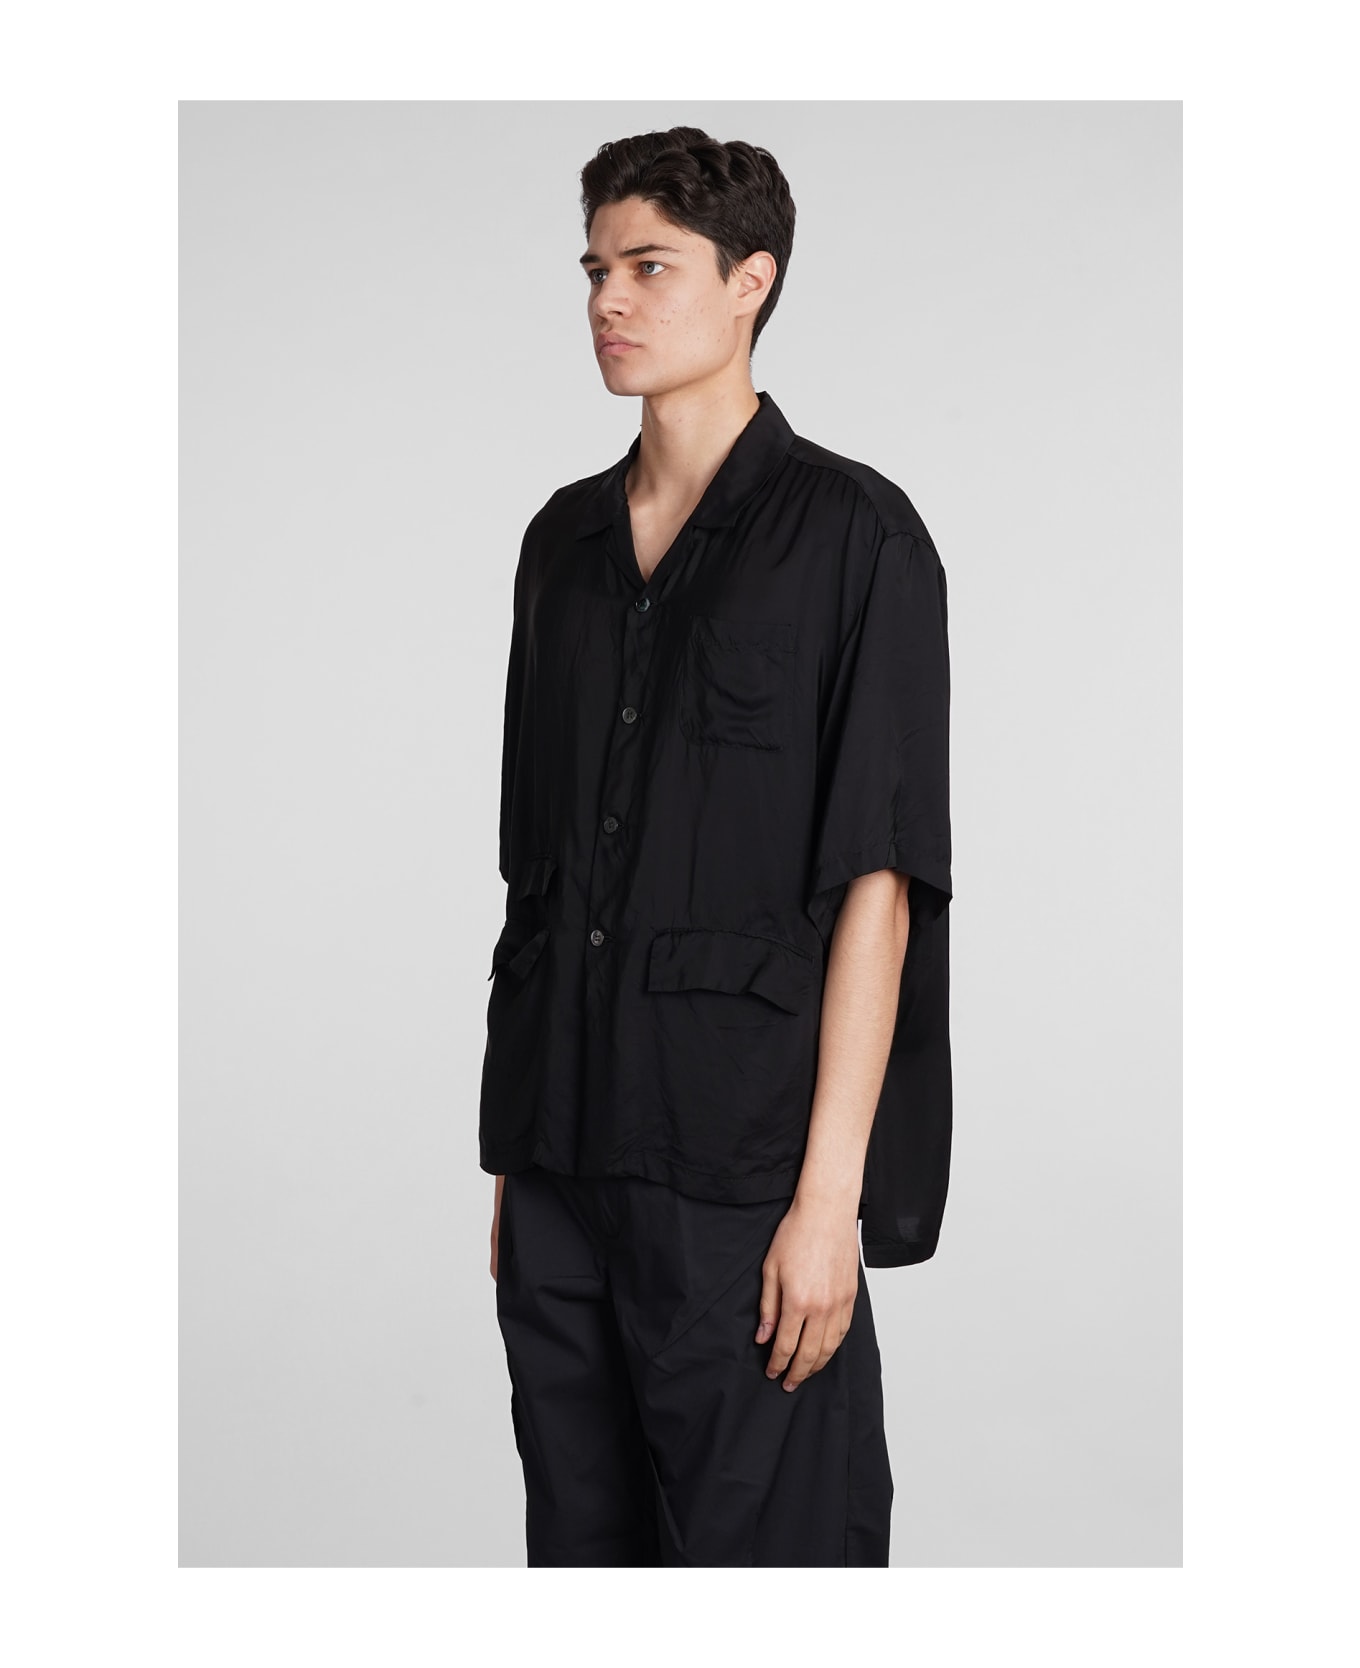 Undercover Jun Takahashi Shirt In Black Polyamide Polyester - black